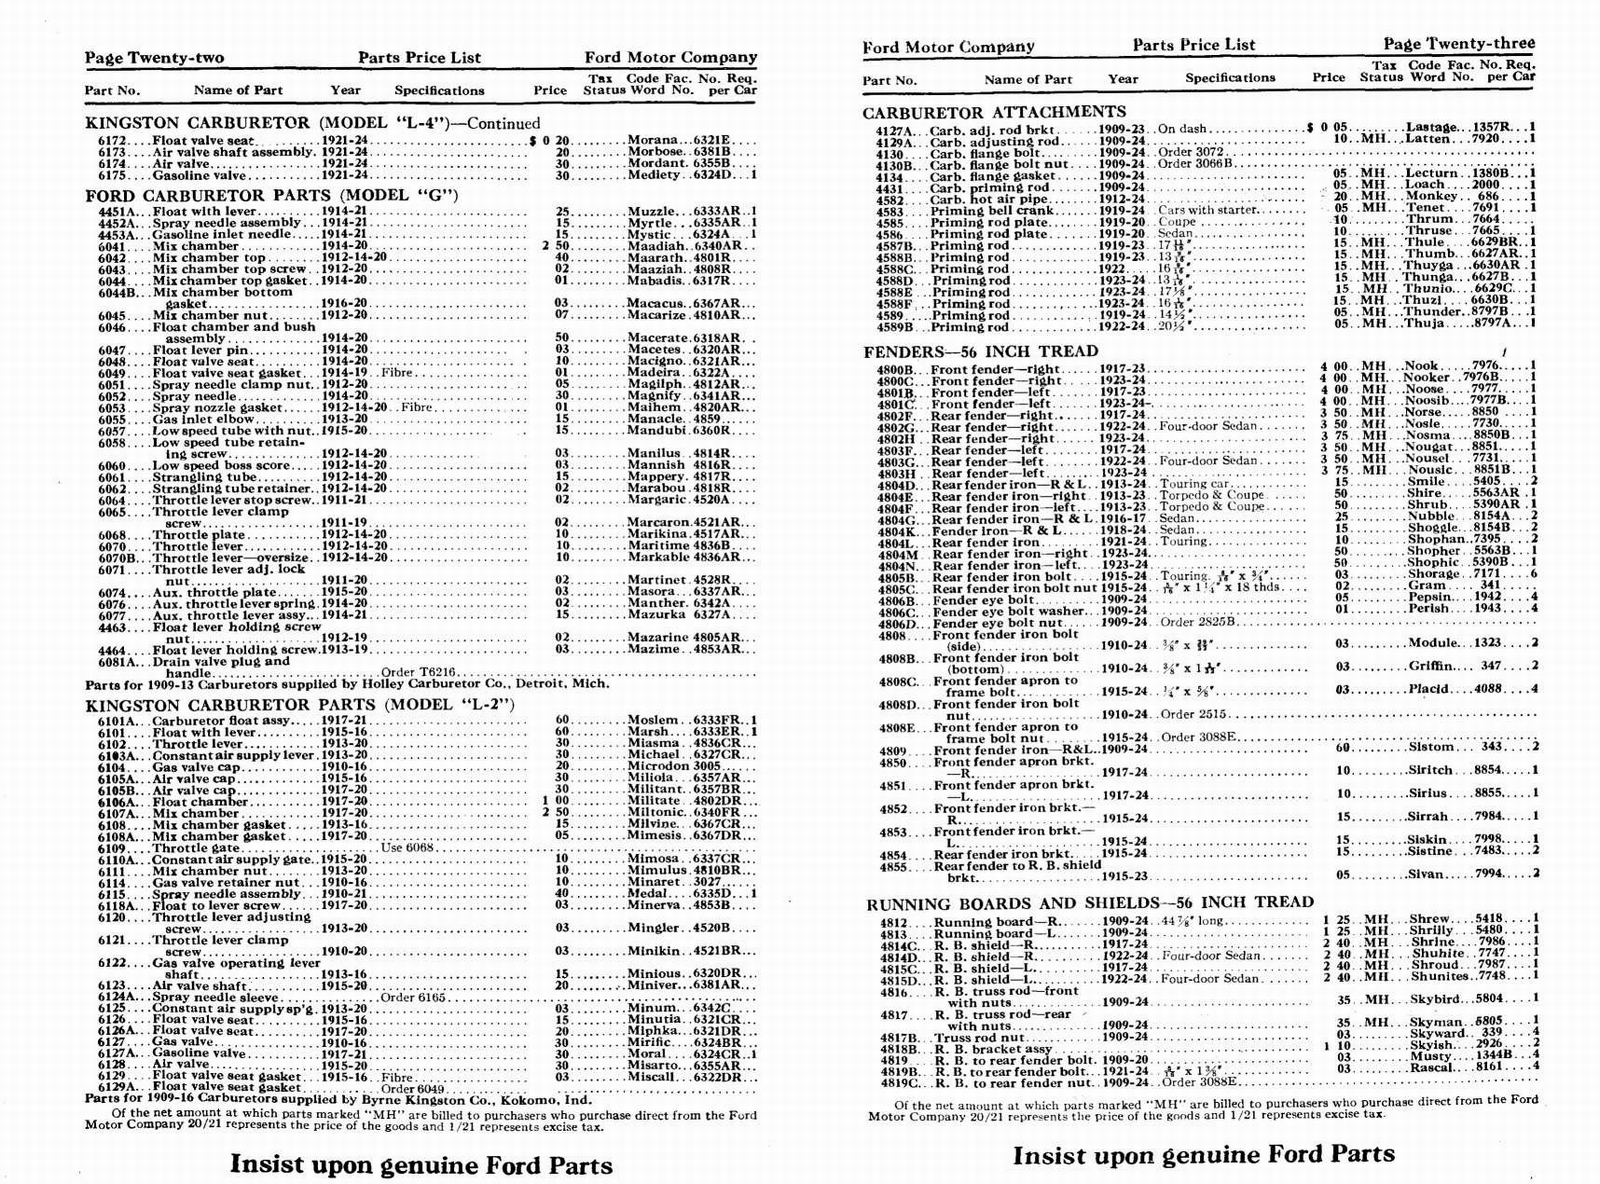 n_1924 Ford Price List-22-23.jpg